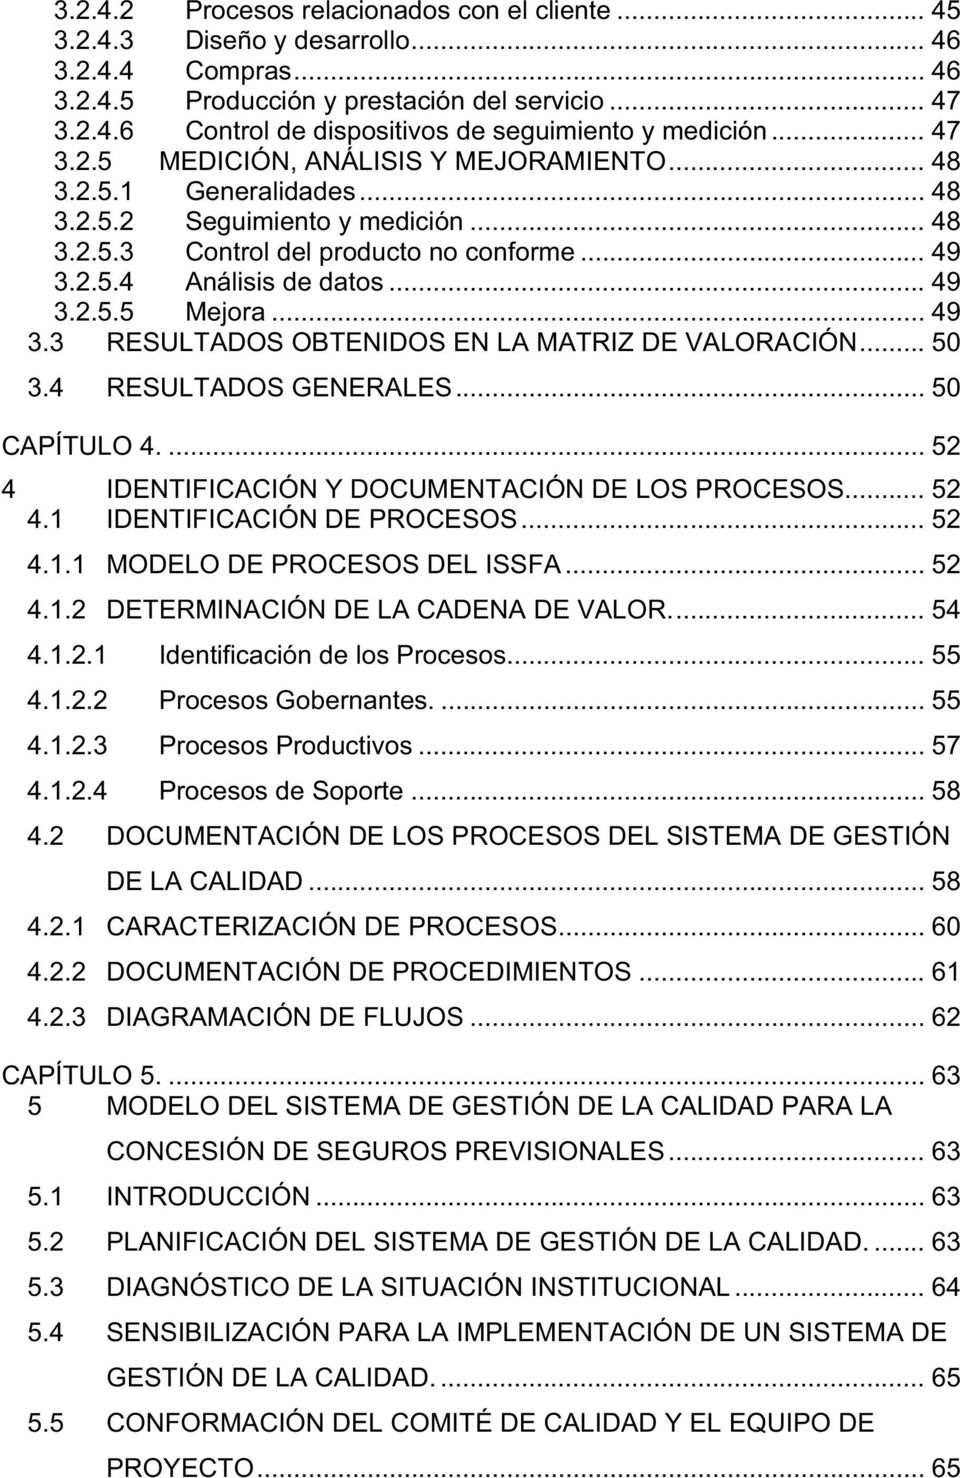 .. 49 3.3 RESULTADOS OBTENIDOS EN LA MATRIZ DE VALORACIÓN... 50 3.4 RESULTADOS GENERALES... 50 CAPÍTULO 4.... 52 4 IDENTIFICACIÓN Y DOCUMENTACIÓN DE LOS PROCESOS... 52 4.1 IDENTIFICACIÓN DE PROCESOS.